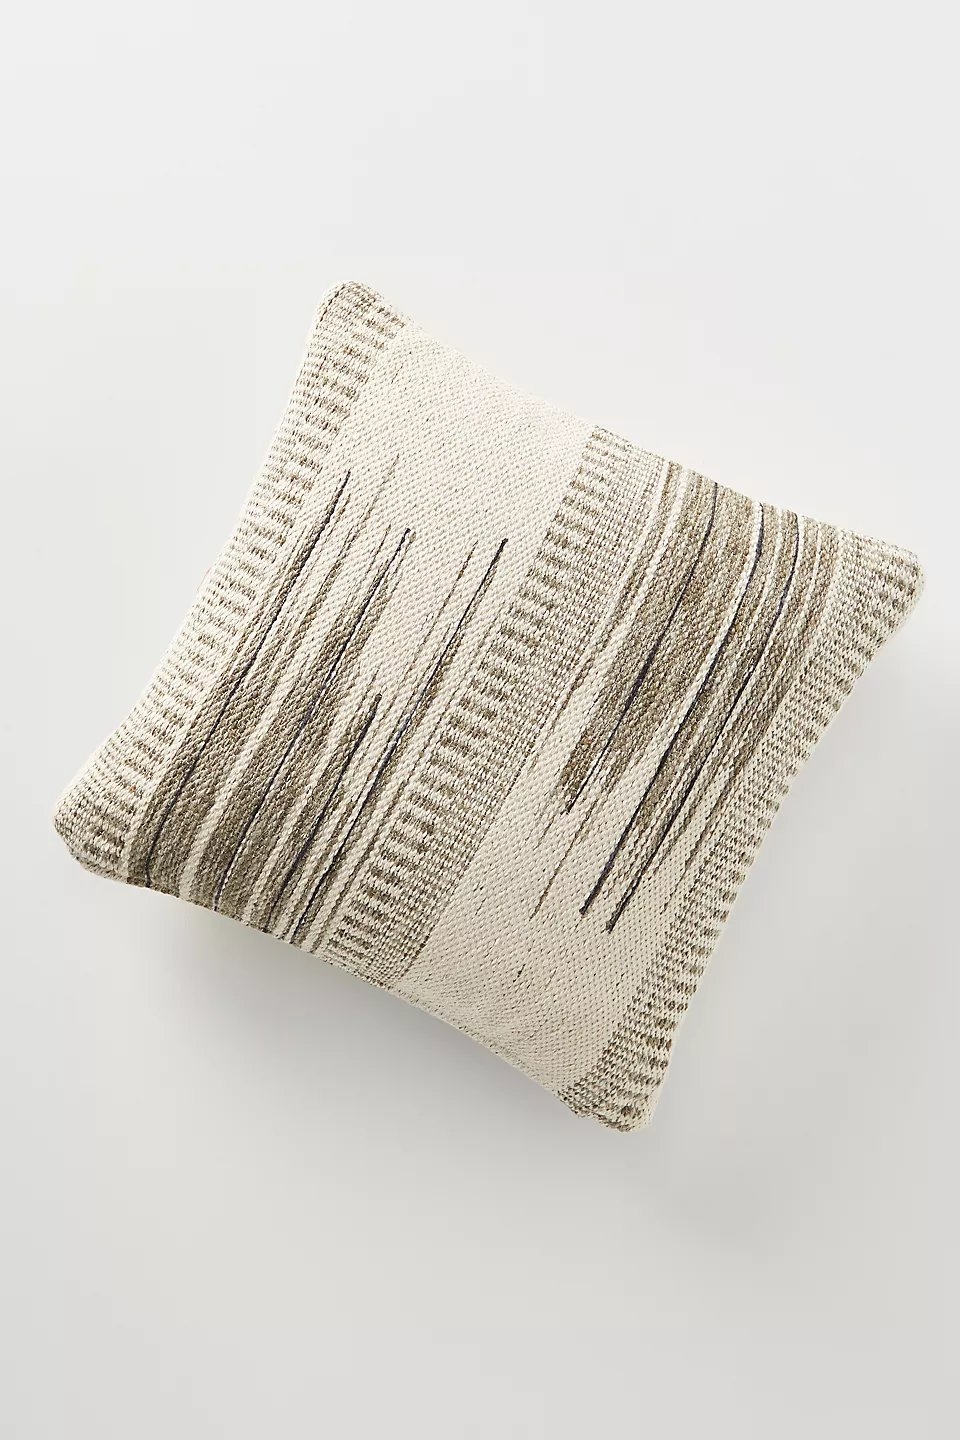 Woven Sybil Pillow - Image 0